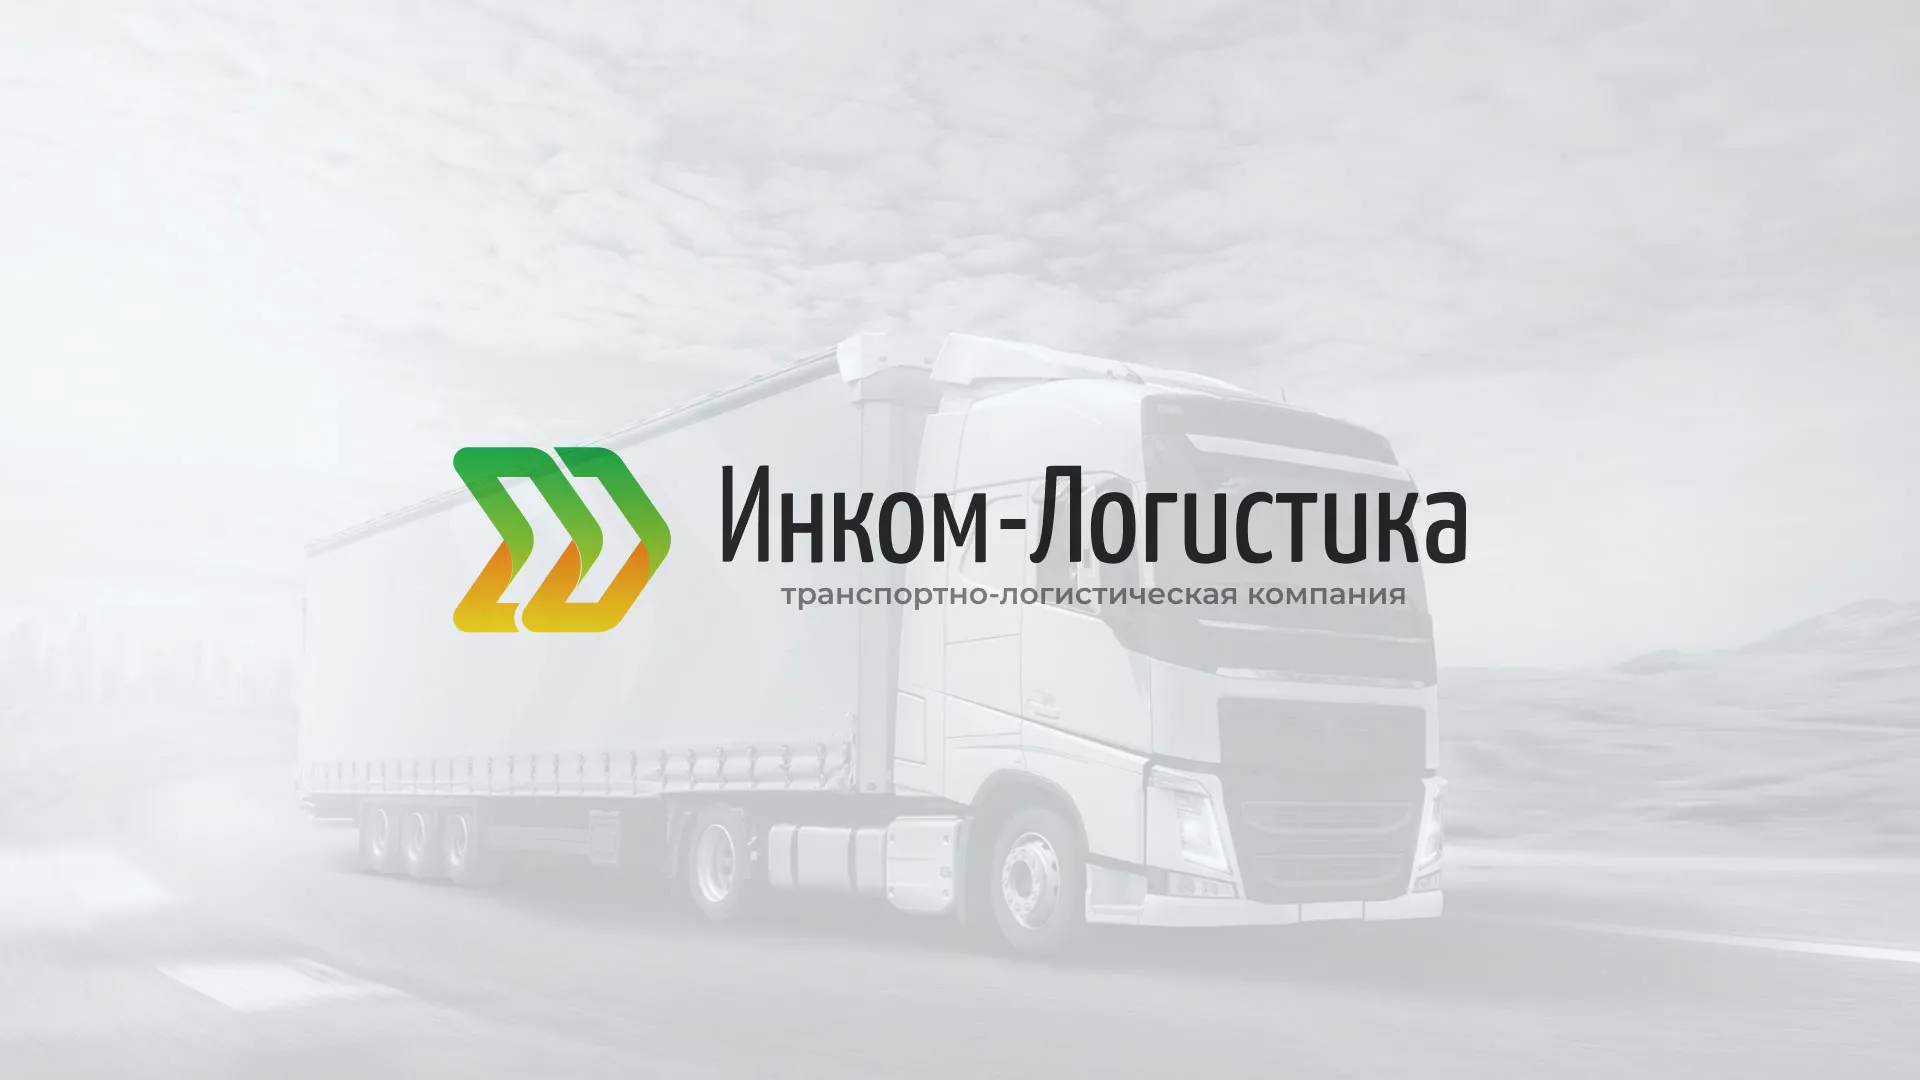 Разработка логотипа и сайта компании «Инком-Логистика» в Дятьково